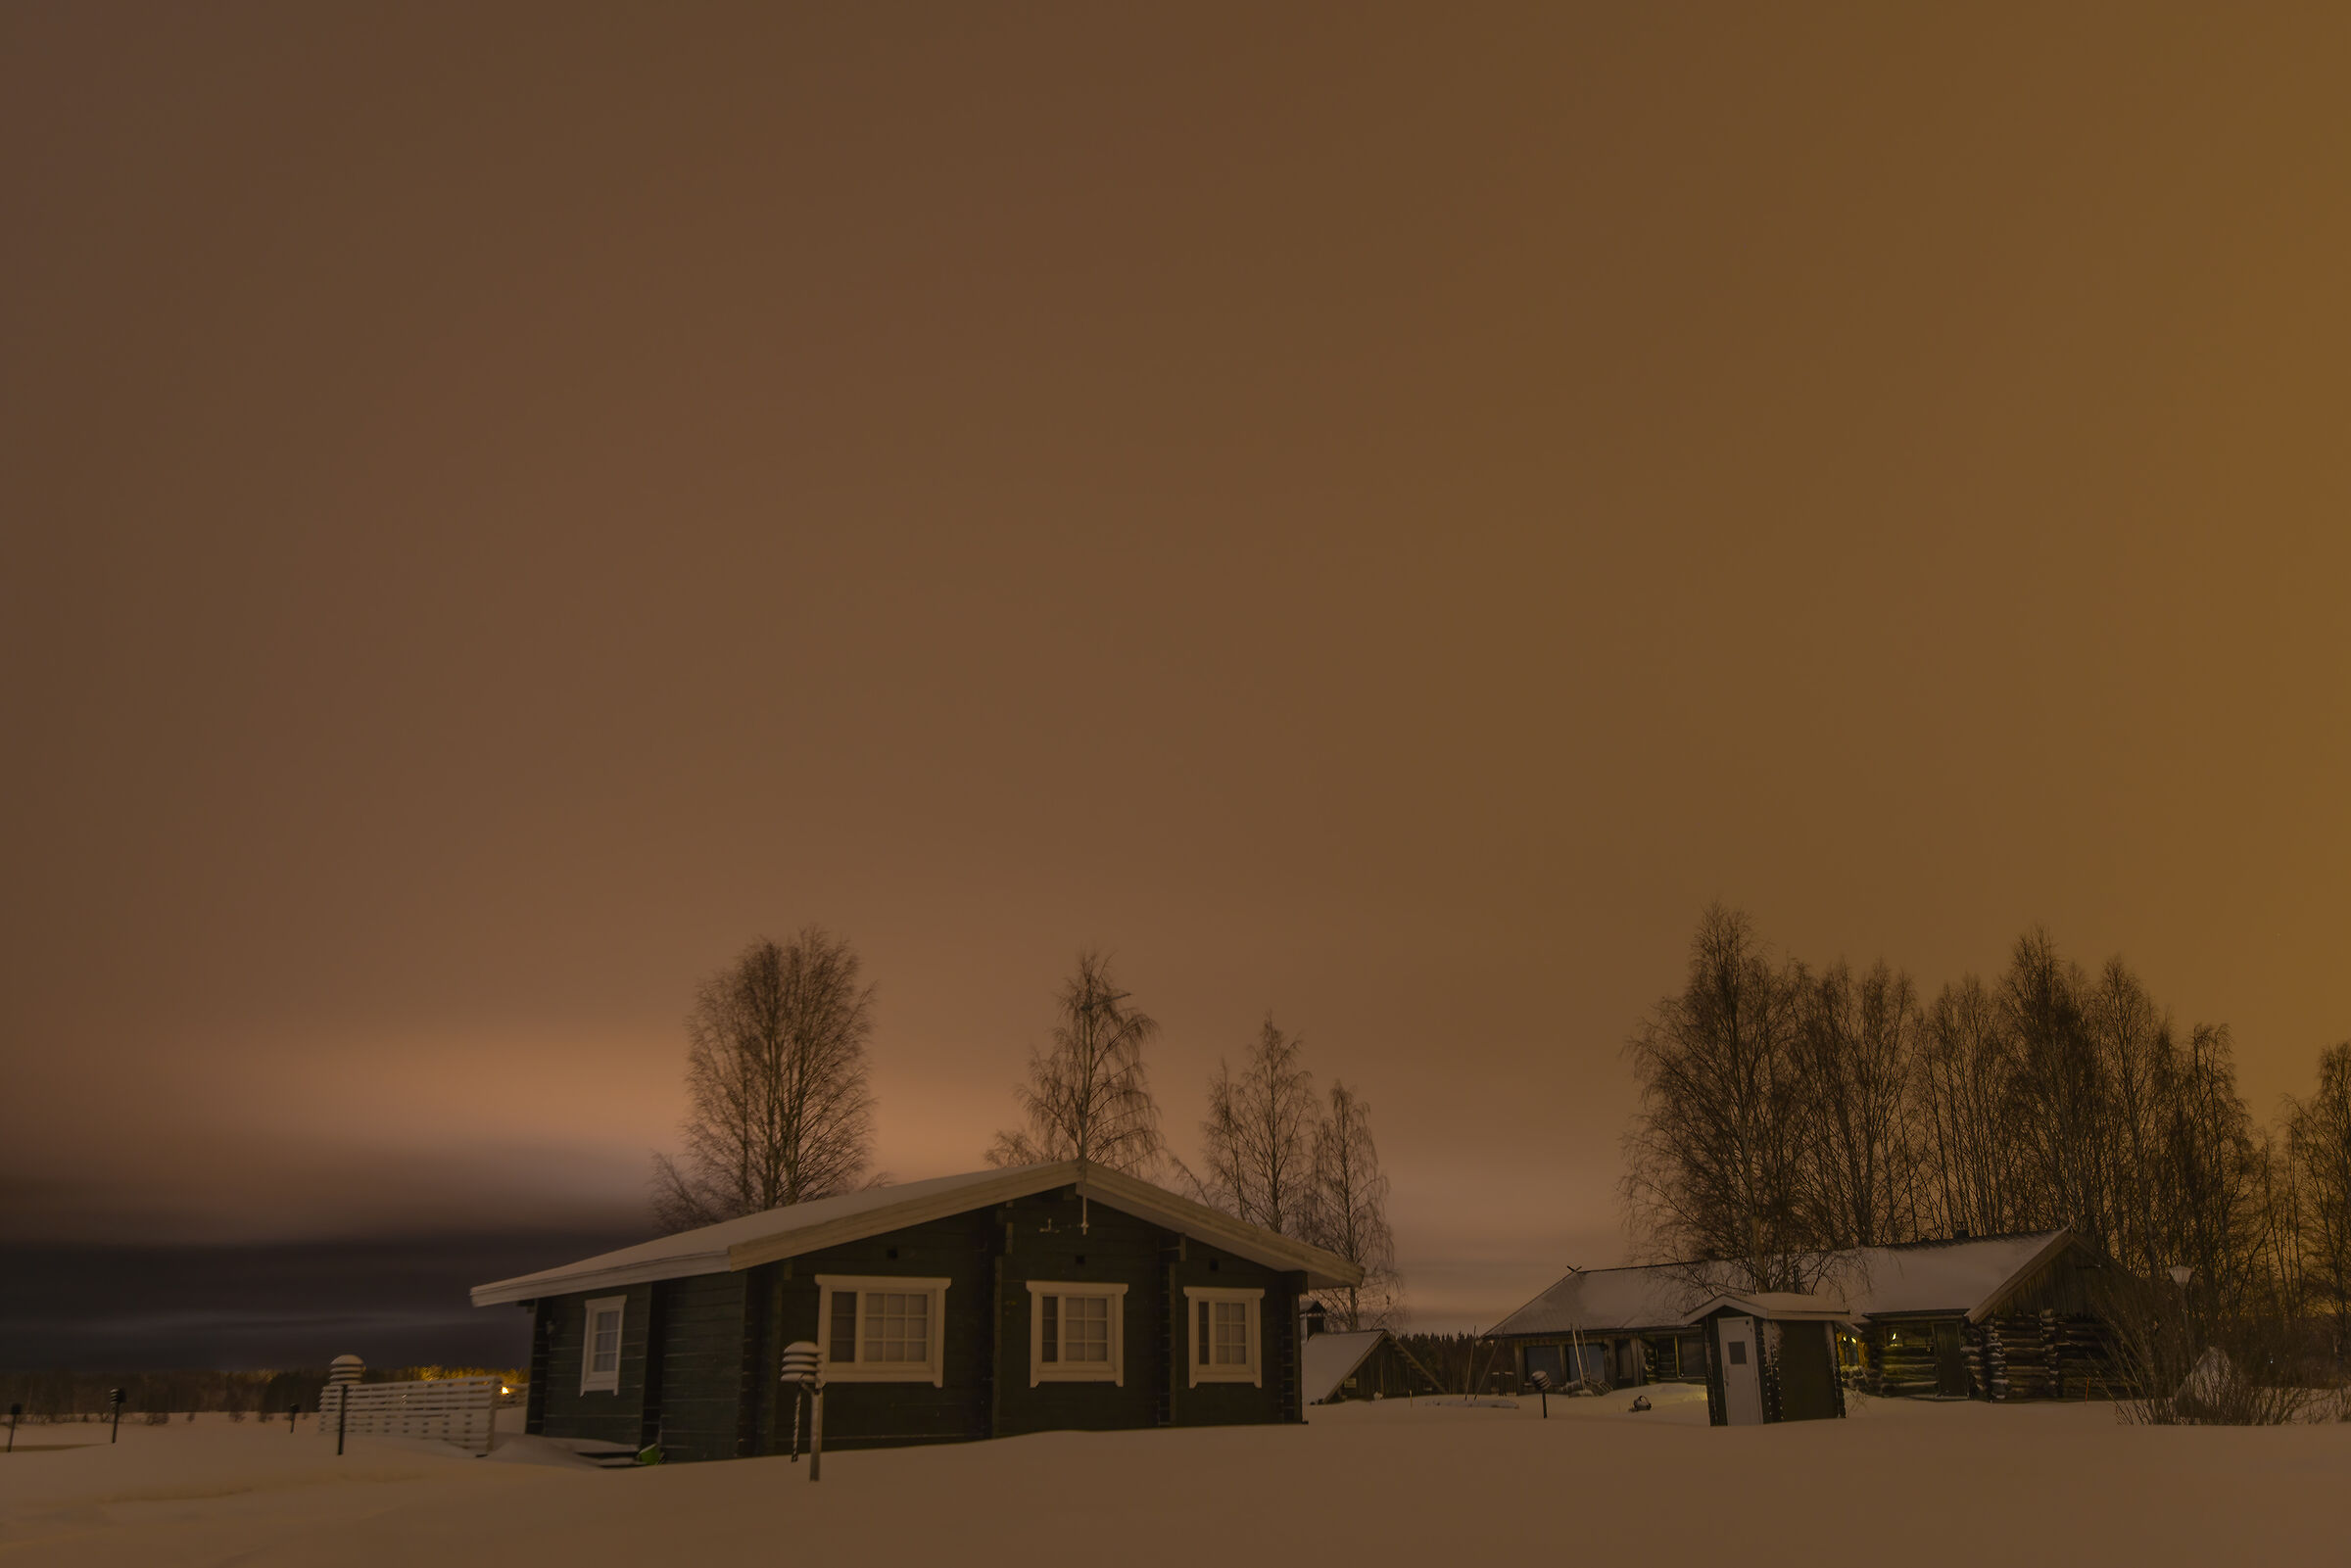 It's evening in Lapland...